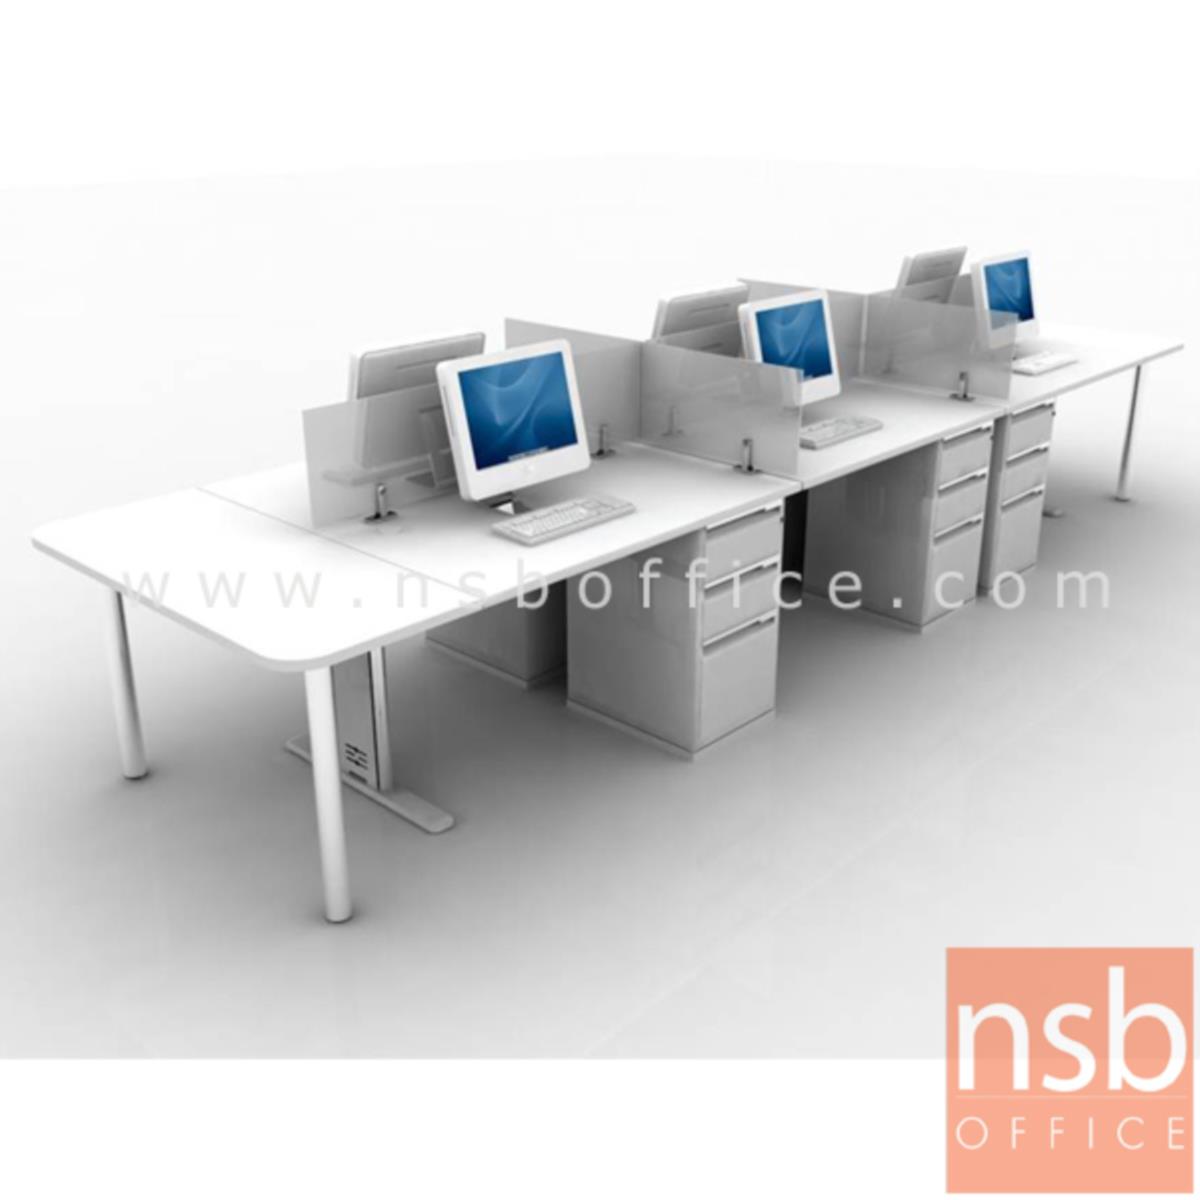 ชุดโต๊ะทำงานกลุ่ม 6 ที่นั่ง  รุ่น WS026G ขนาด 360W, 480W cm. พร้อมมินิสกรีนกระจกและตู้ 3 ลิ้นชักเหล็ก  ขาเหล็ก